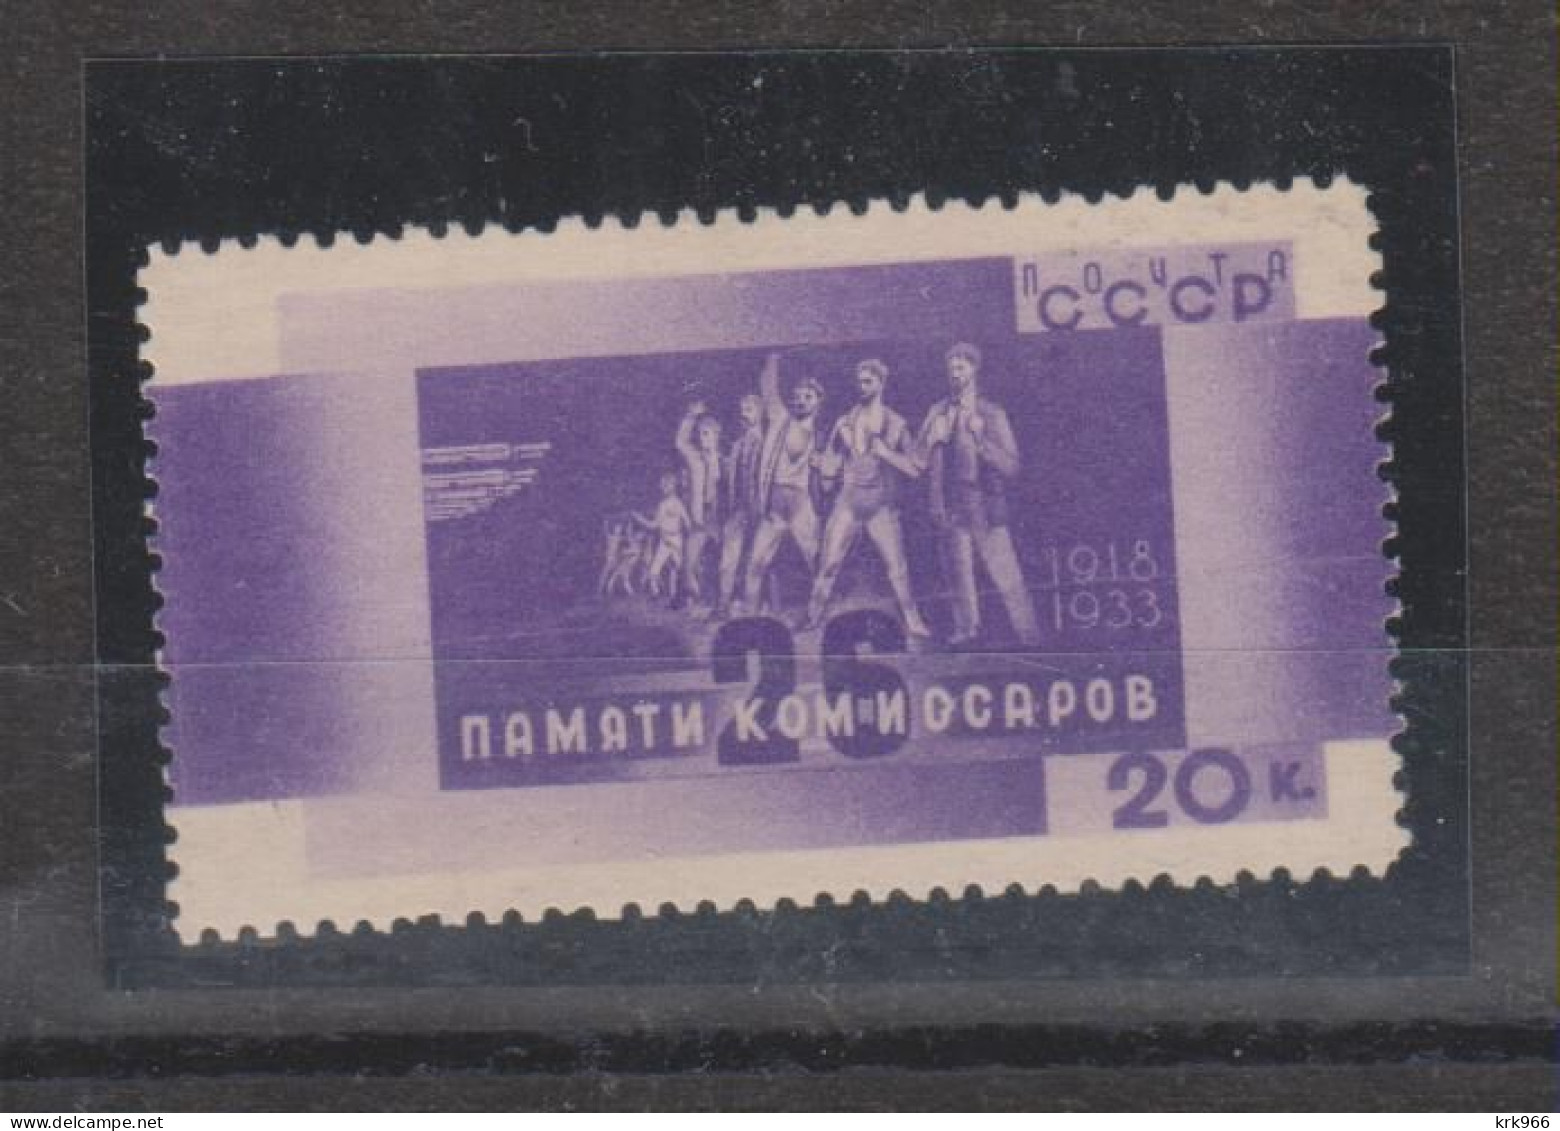 RUSSIA 1933 20 K Nice Stamp   MNH - Nuevos